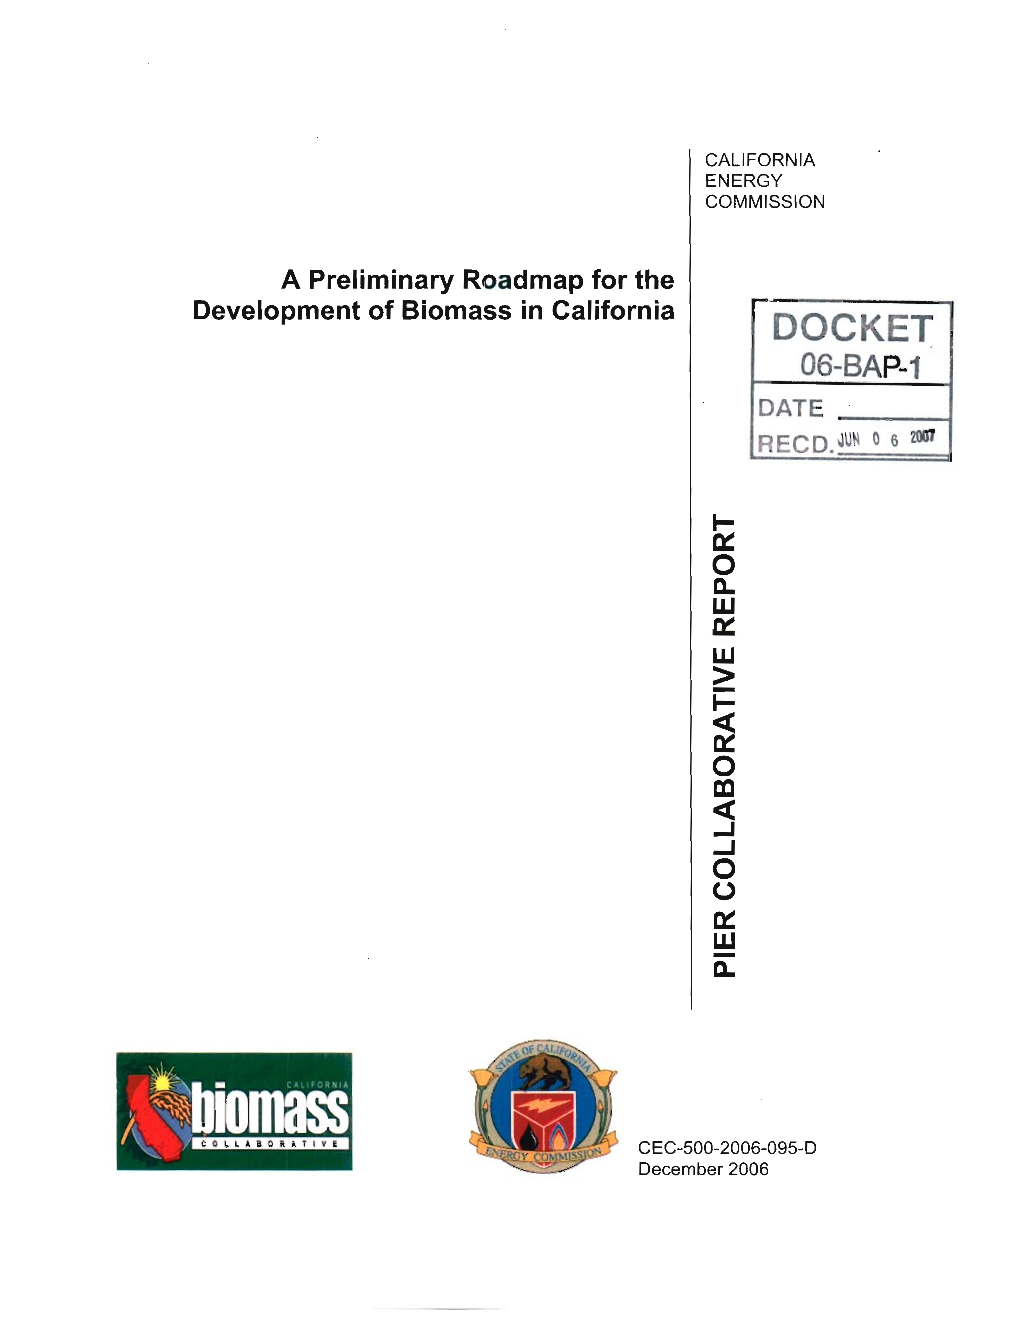 A Preliminary Roadmap for the Development of Biomass in California